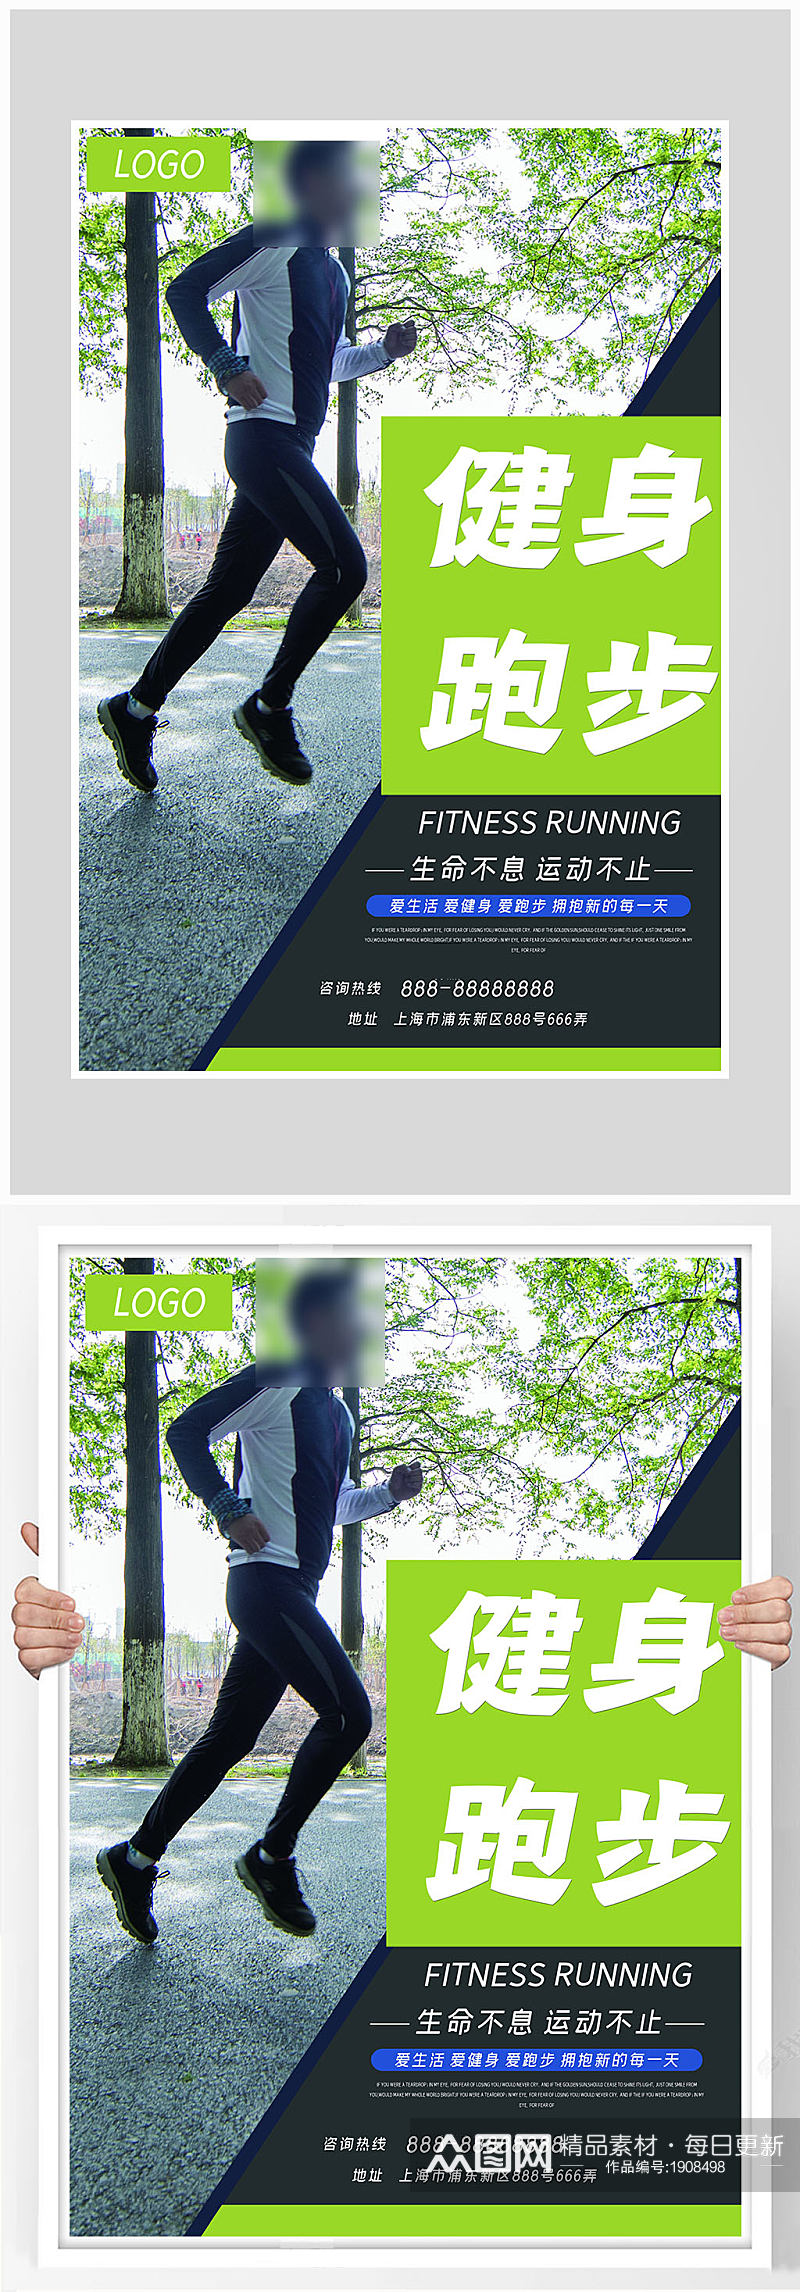 创意质感健身跑步海报设计素材